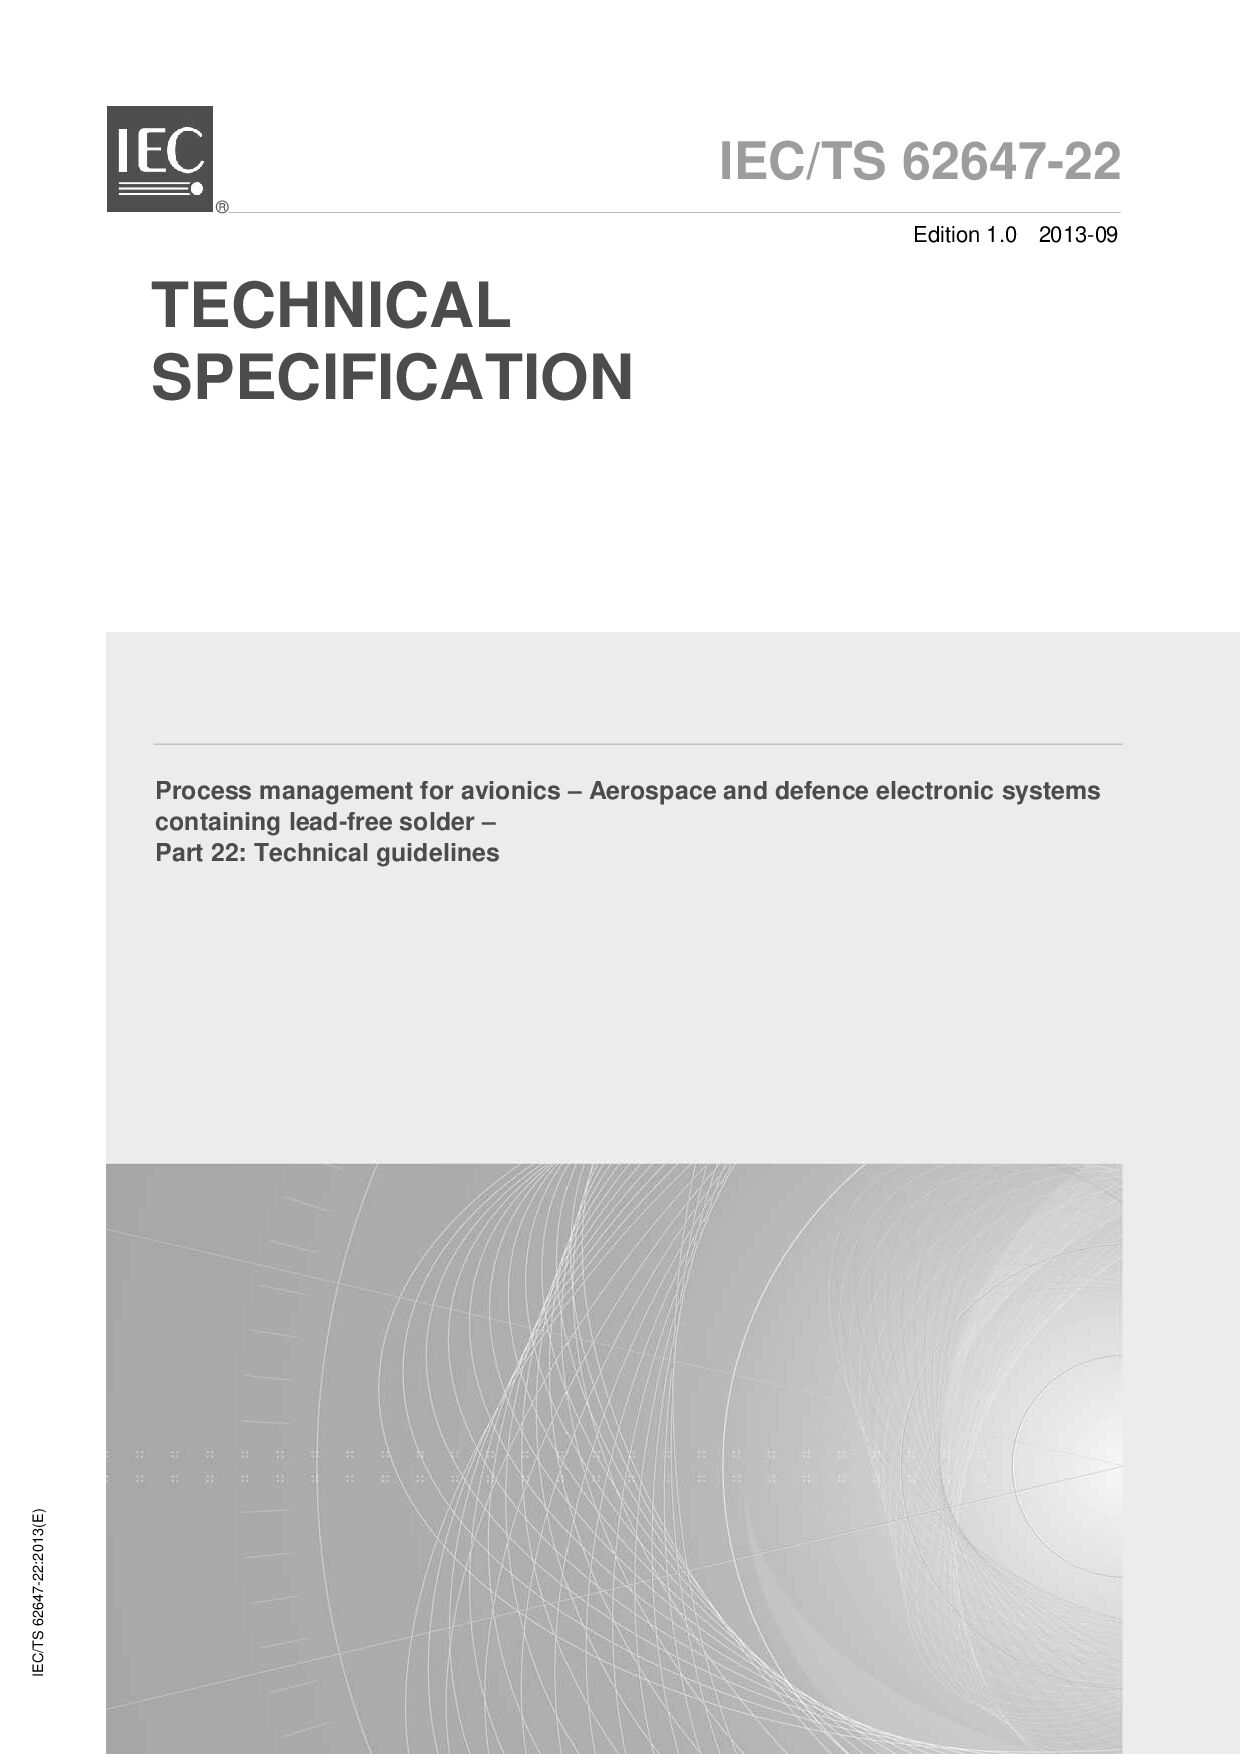 IEC TS 62647-22:2013